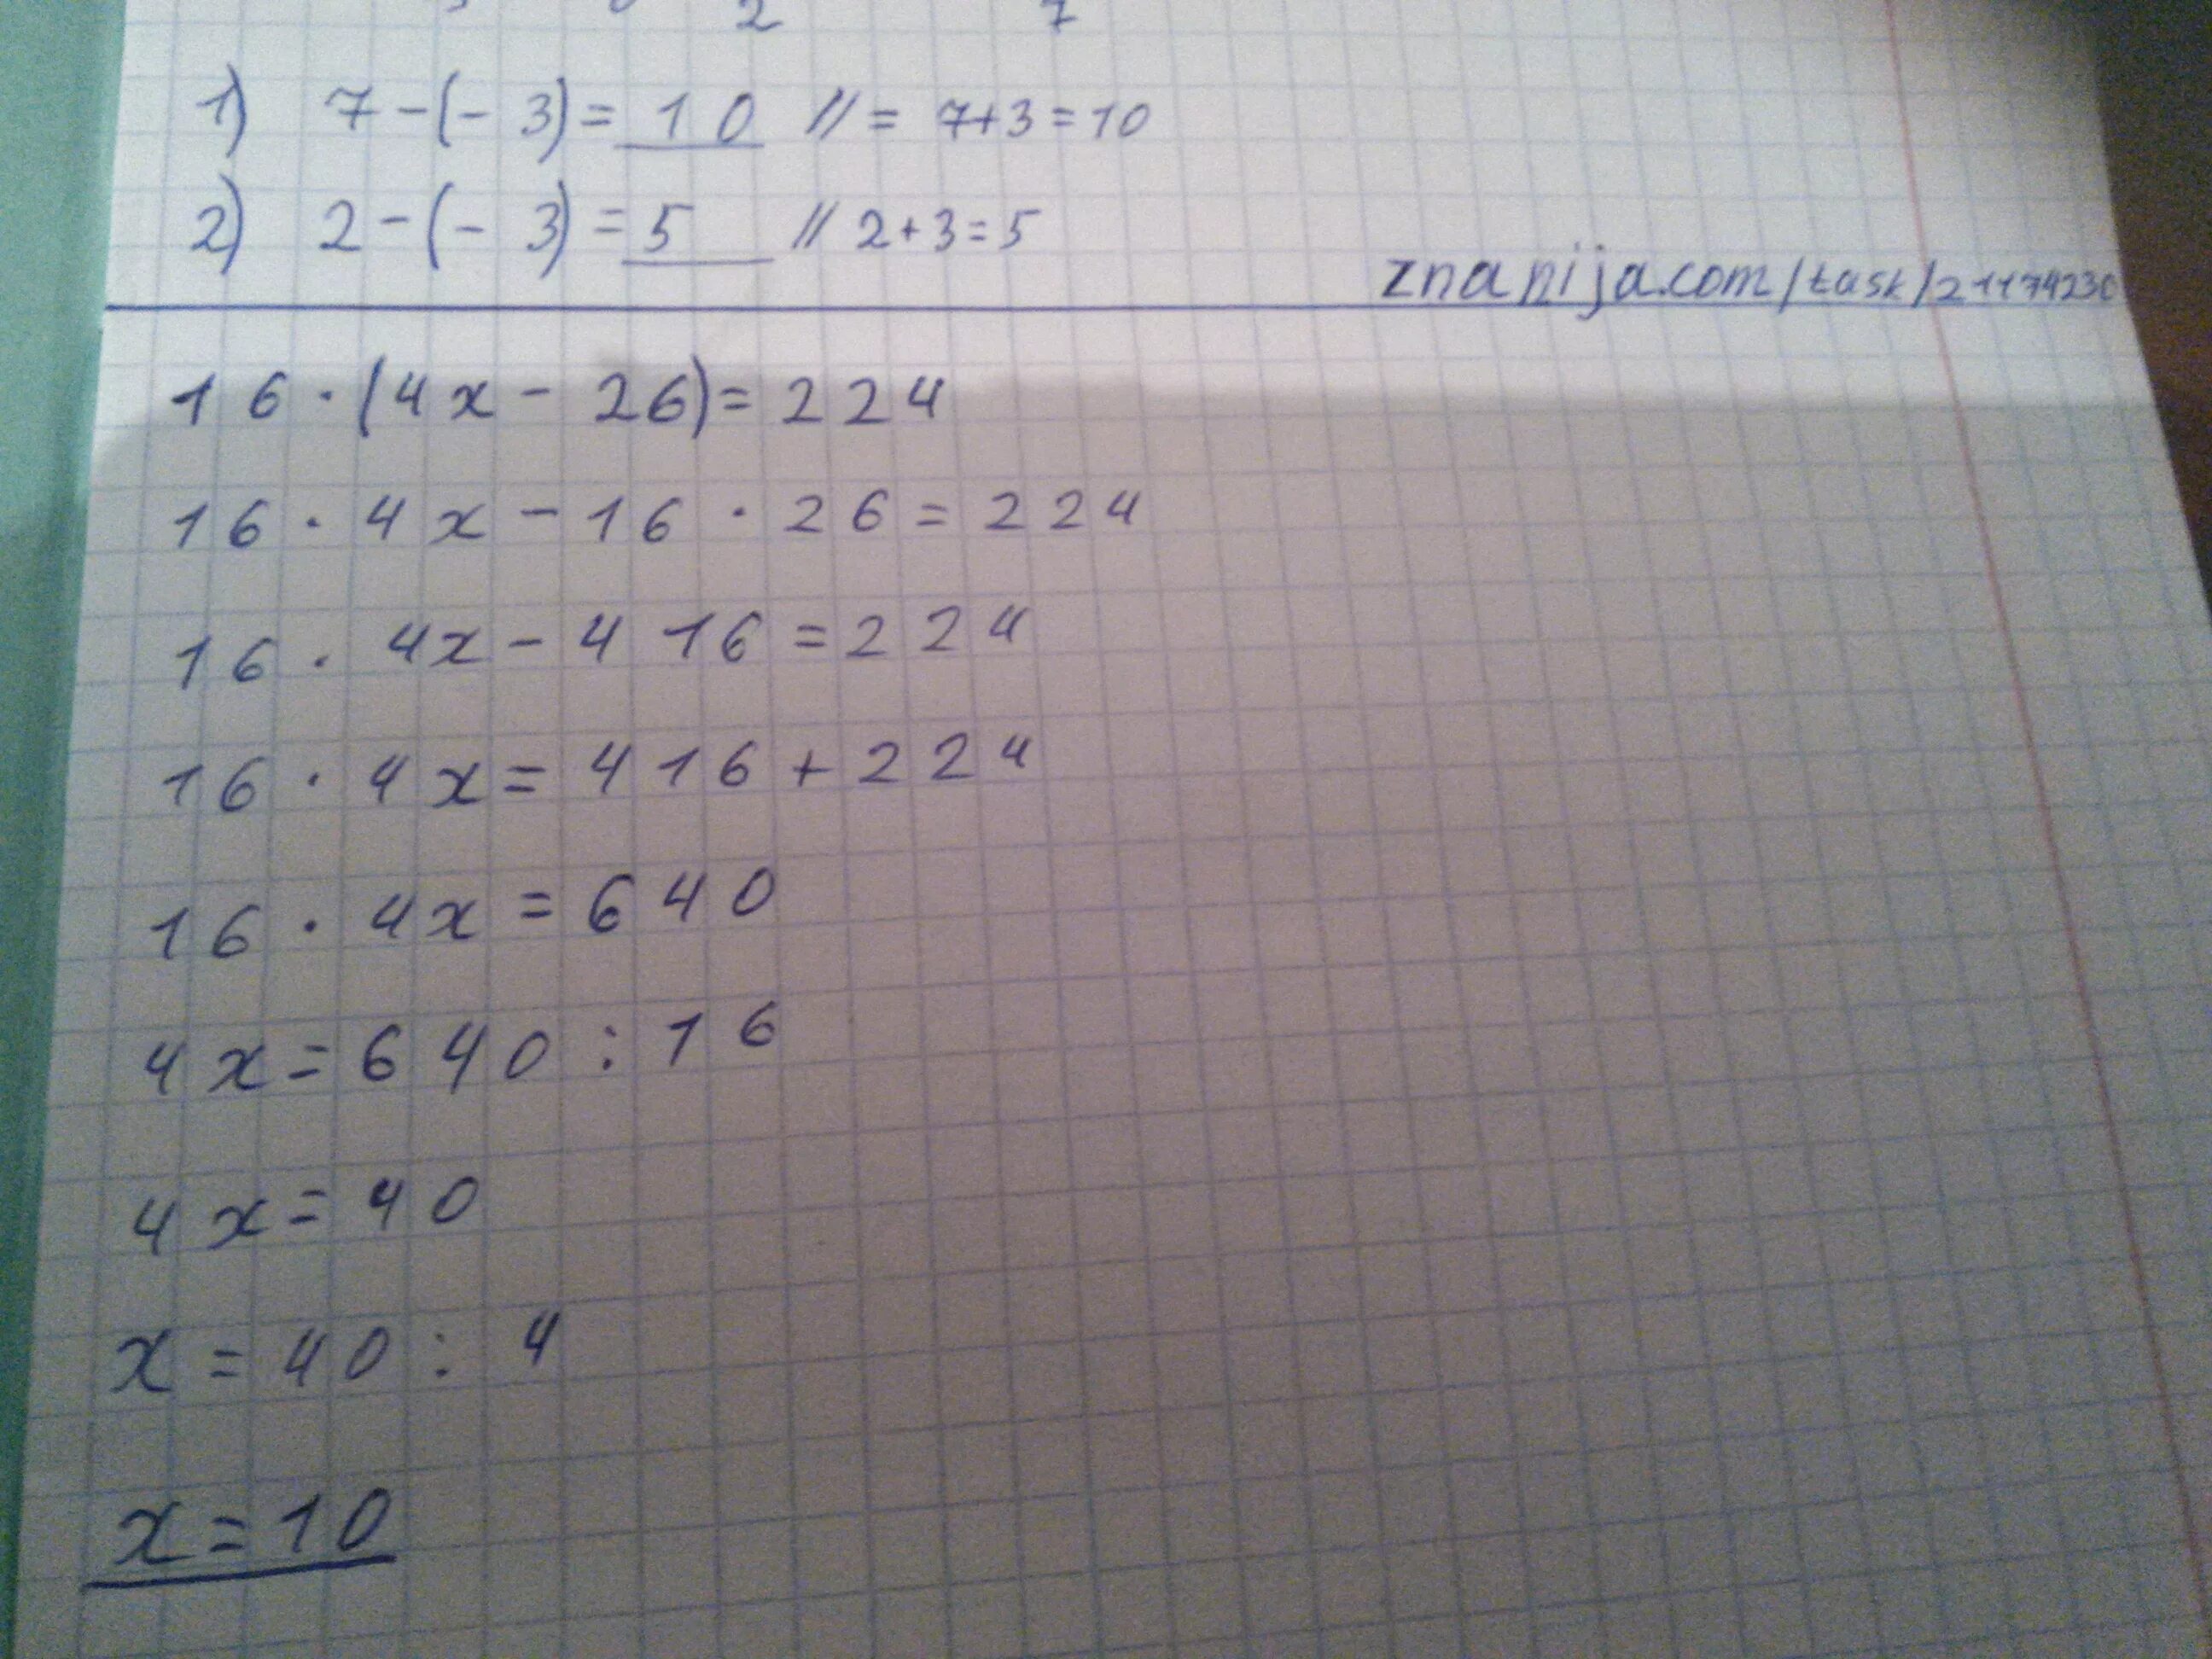 1 9 5 16 решение. 16(4х-26)=224. (4×Х+26):7=14. Решить уравнение 16 4x-26) 224. 16(4х-26)=224 математика 5 класс m.